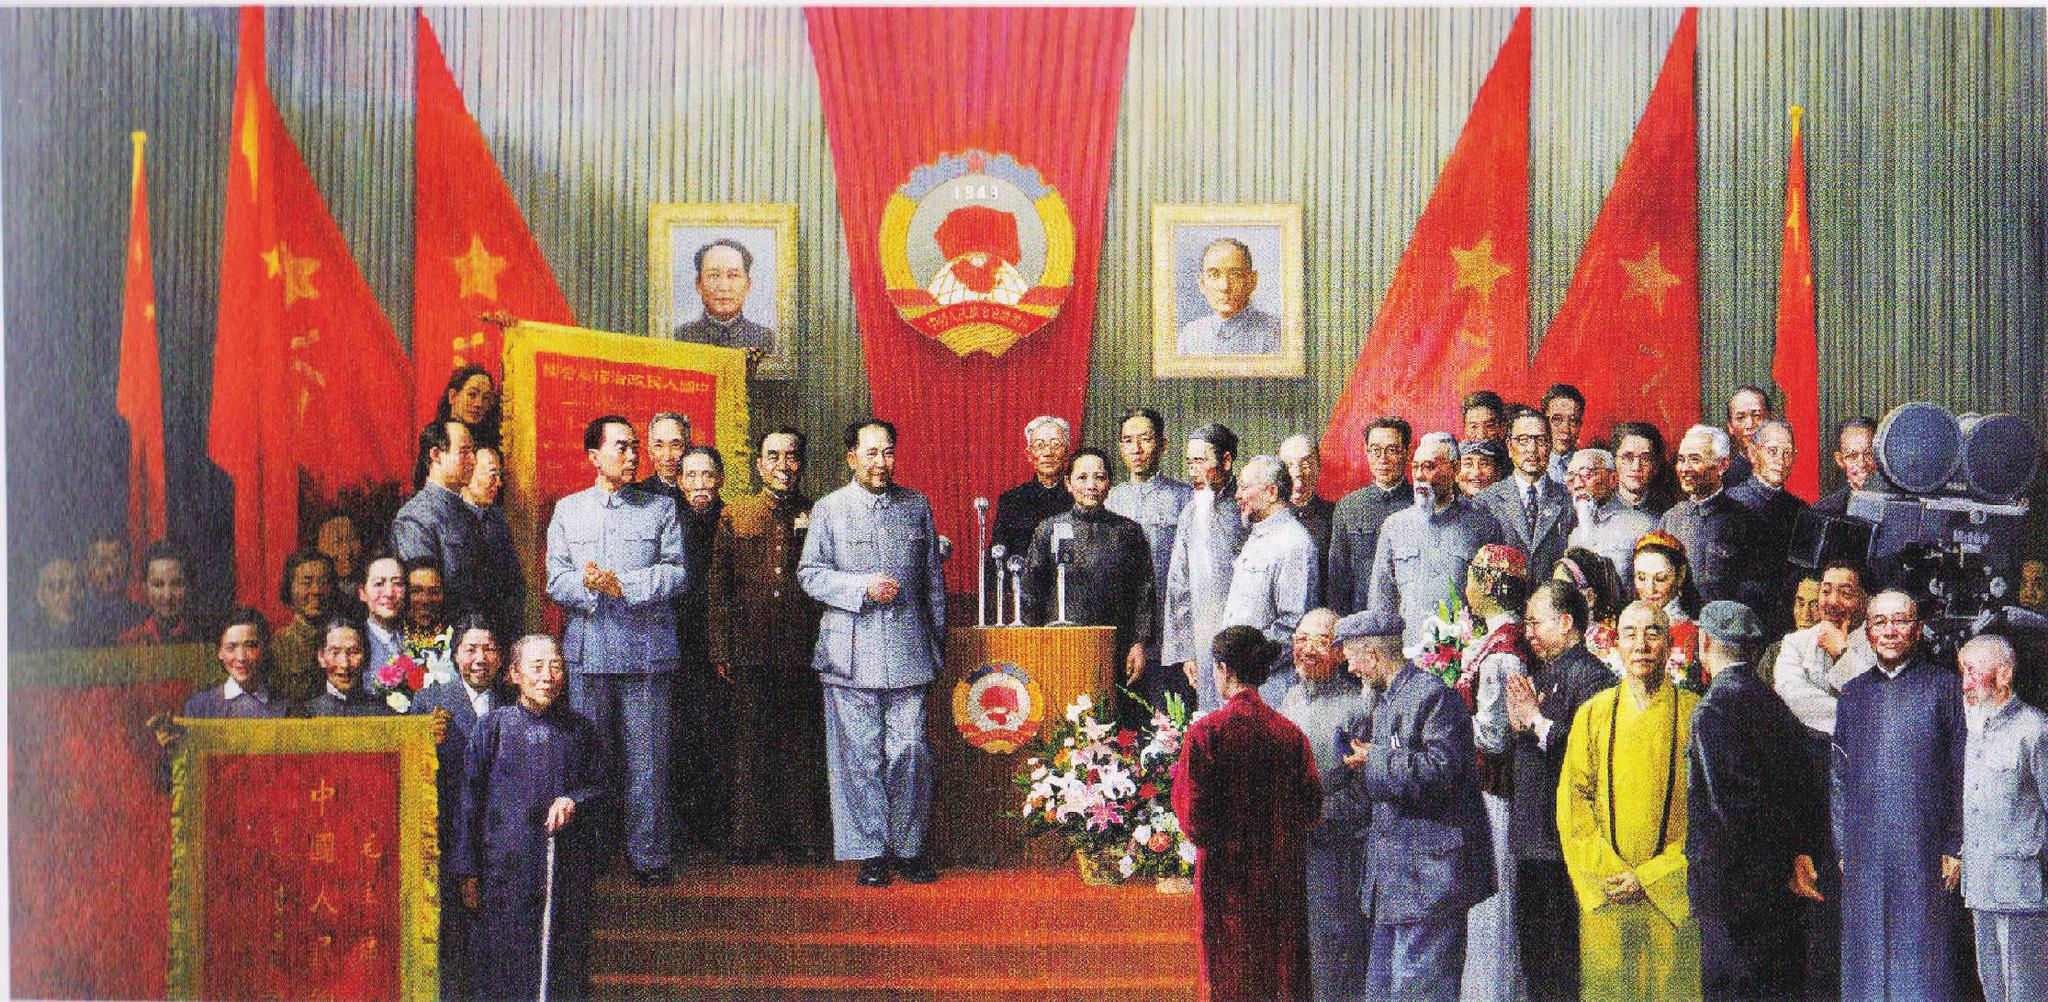 1949年10月1日,庆祝中华人民共和国中央人民政府成立典礼在首都北京